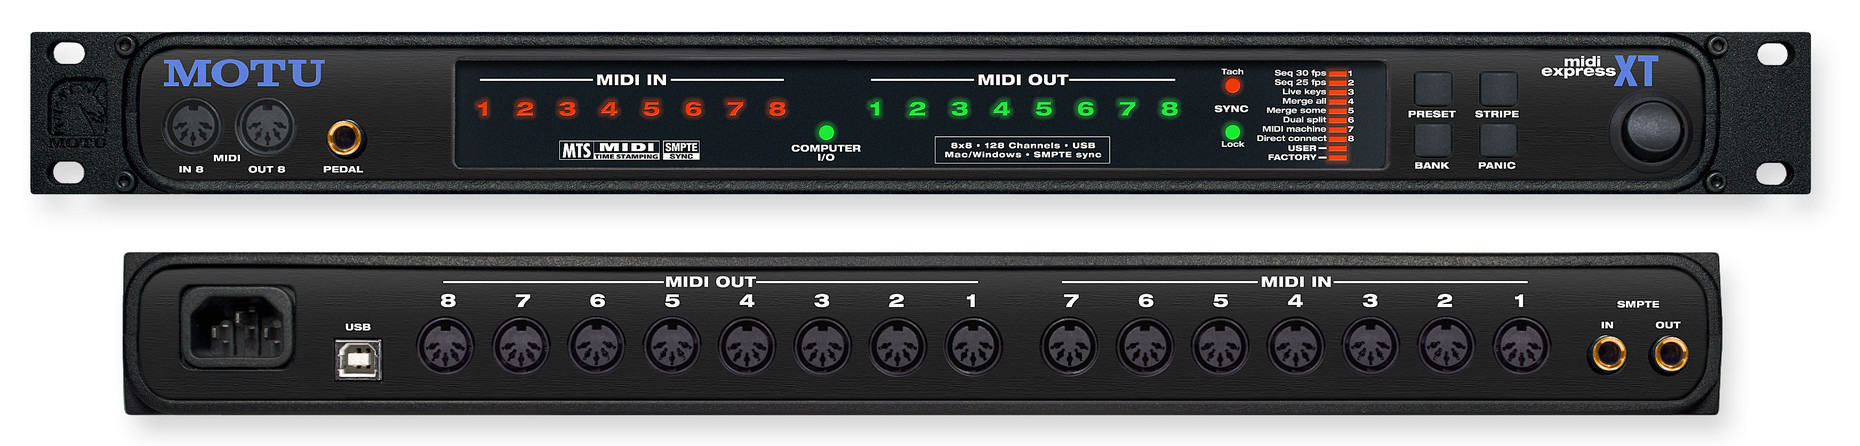 MOTU MIDI Express XT 8x8 USB MIDI interface